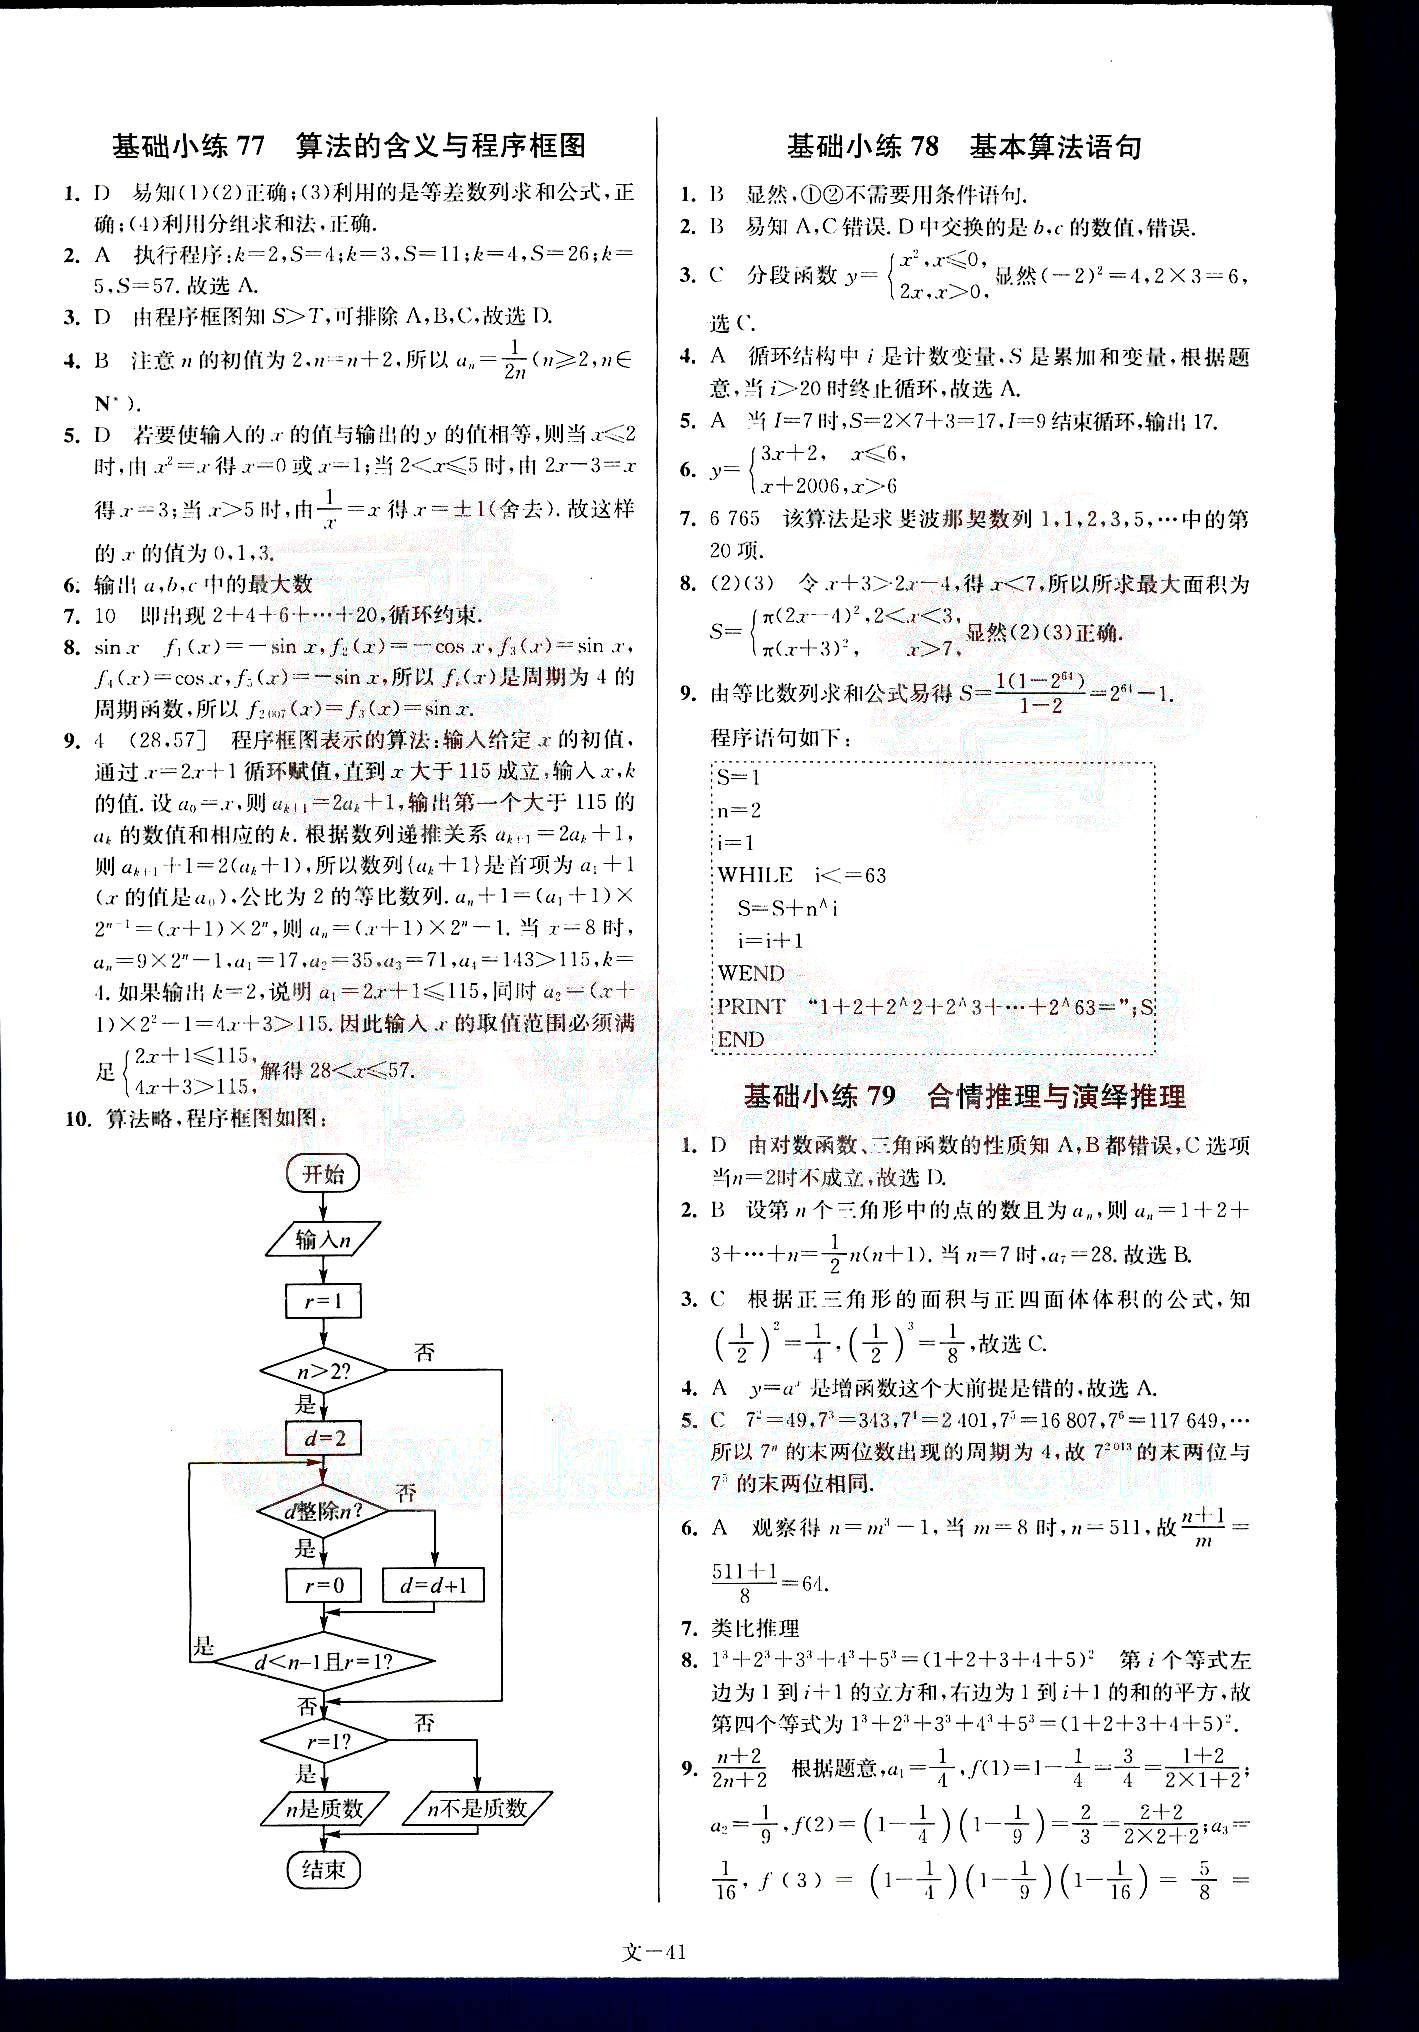 小题狂做-高考数学-文科-最基础篇南京大学出版社 第9部分 [1]